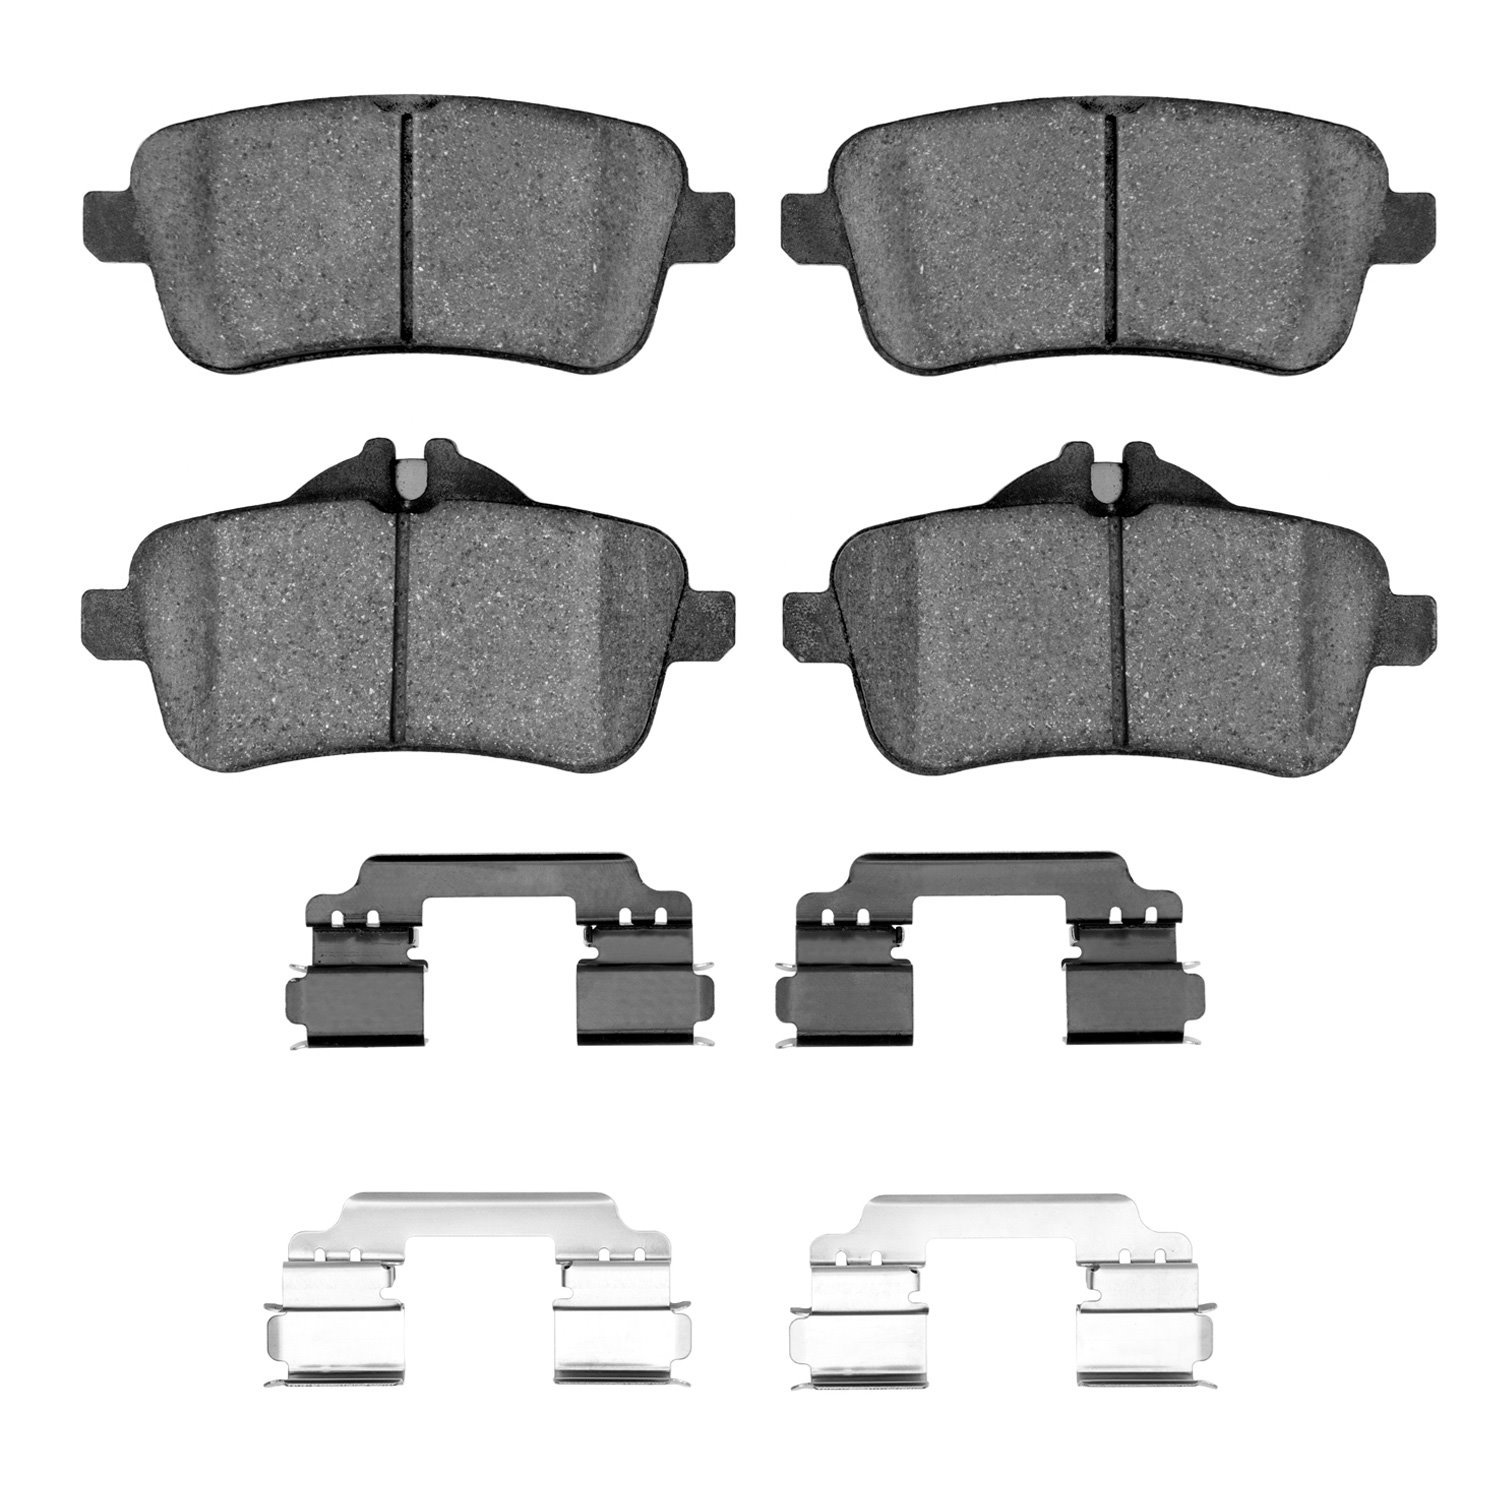 1310-1630-01 3000-Series Ceramic Brake Pads & Hardware Kit, 2012-2020 Mercedes-Benz, Position: Rear